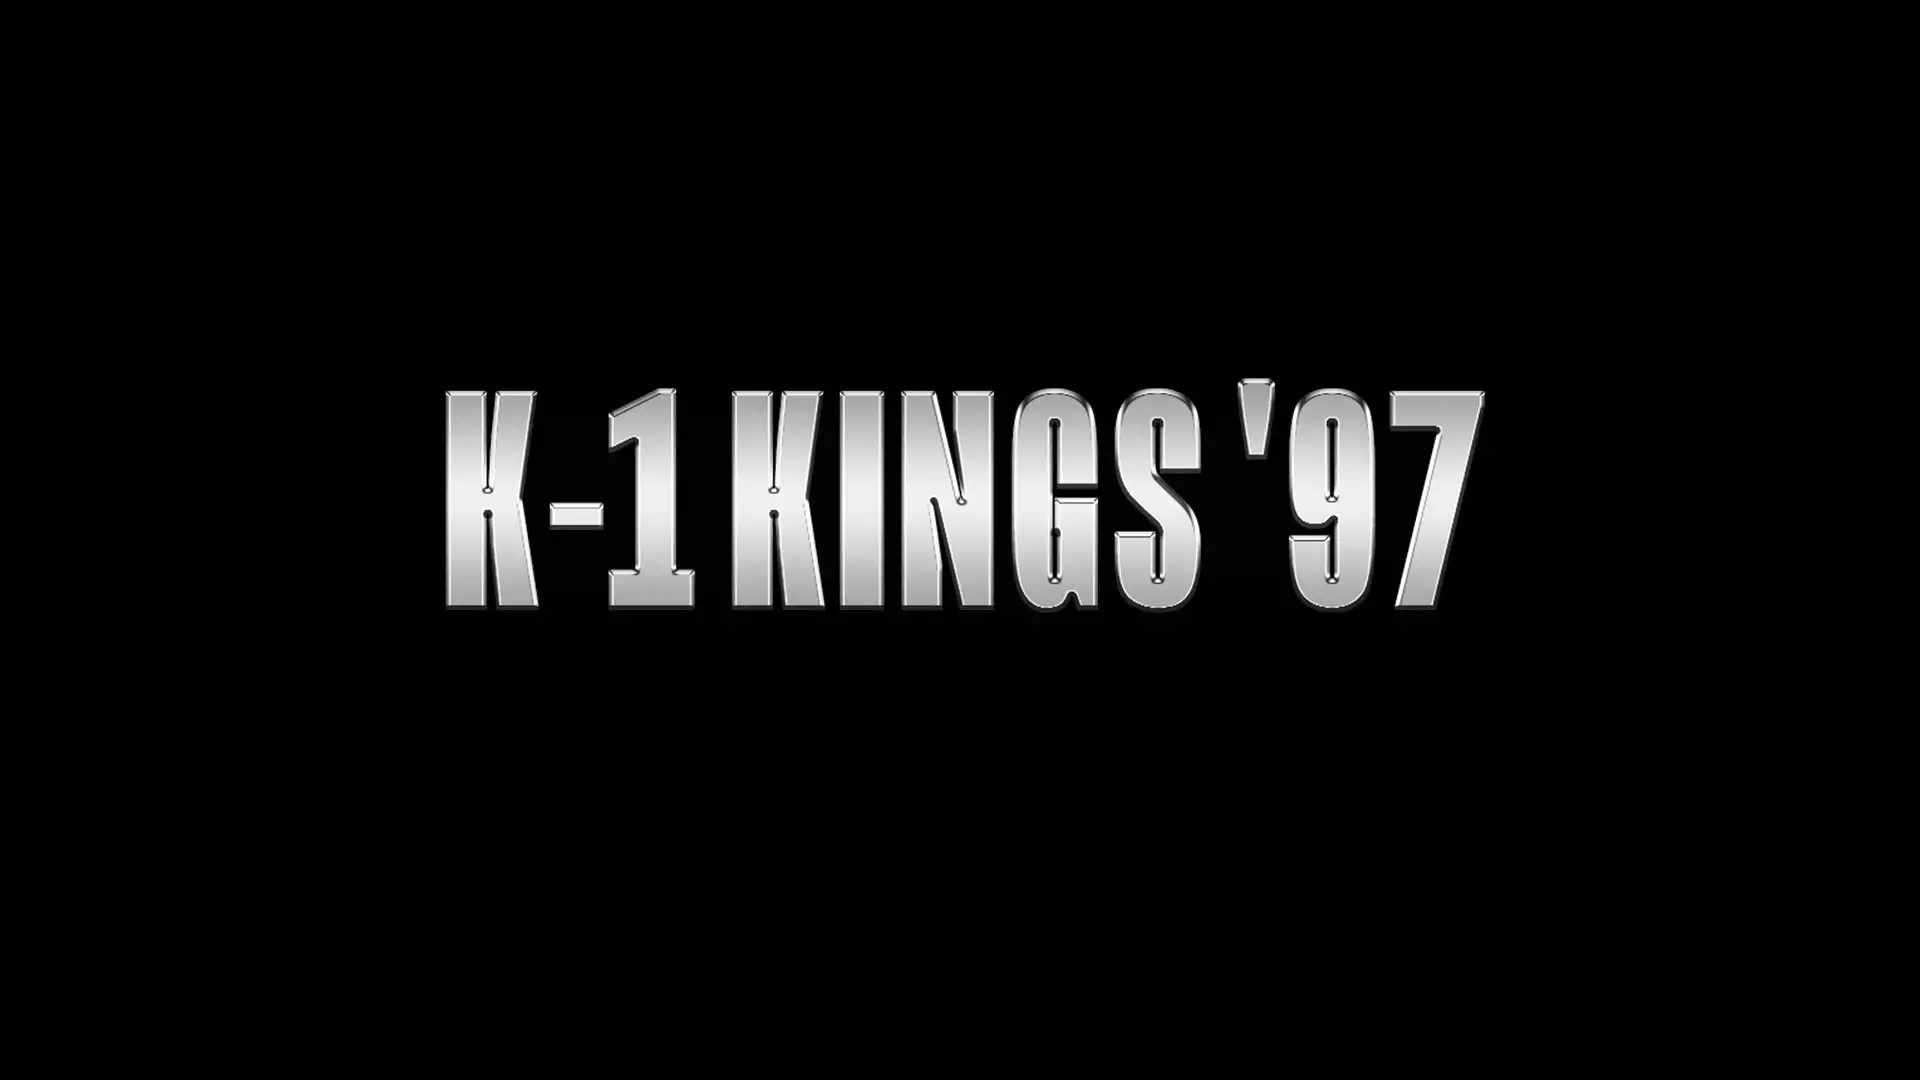 K-1 Kings '97